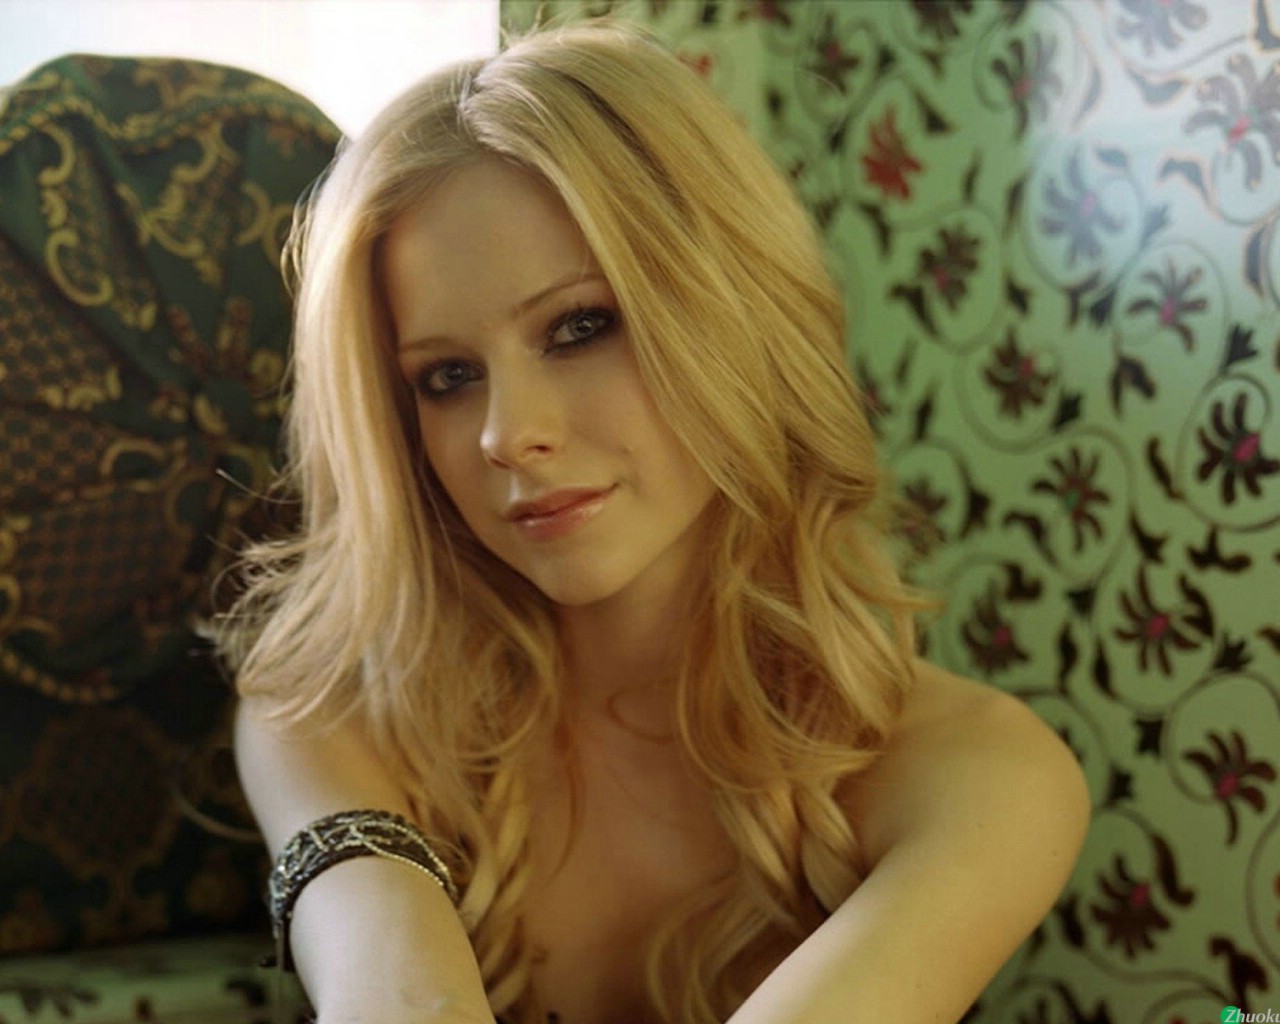 壁纸1280x1024艾薇儿 Avril Lavigne 壁纸116壁纸 艾薇儿 Avril Lavigne壁纸 艾薇儿 Avril Lavigne图片 艾薇儿 Avril Lavigne素材 明星壁纸 明星图库 明星图片素材桌面壁纸